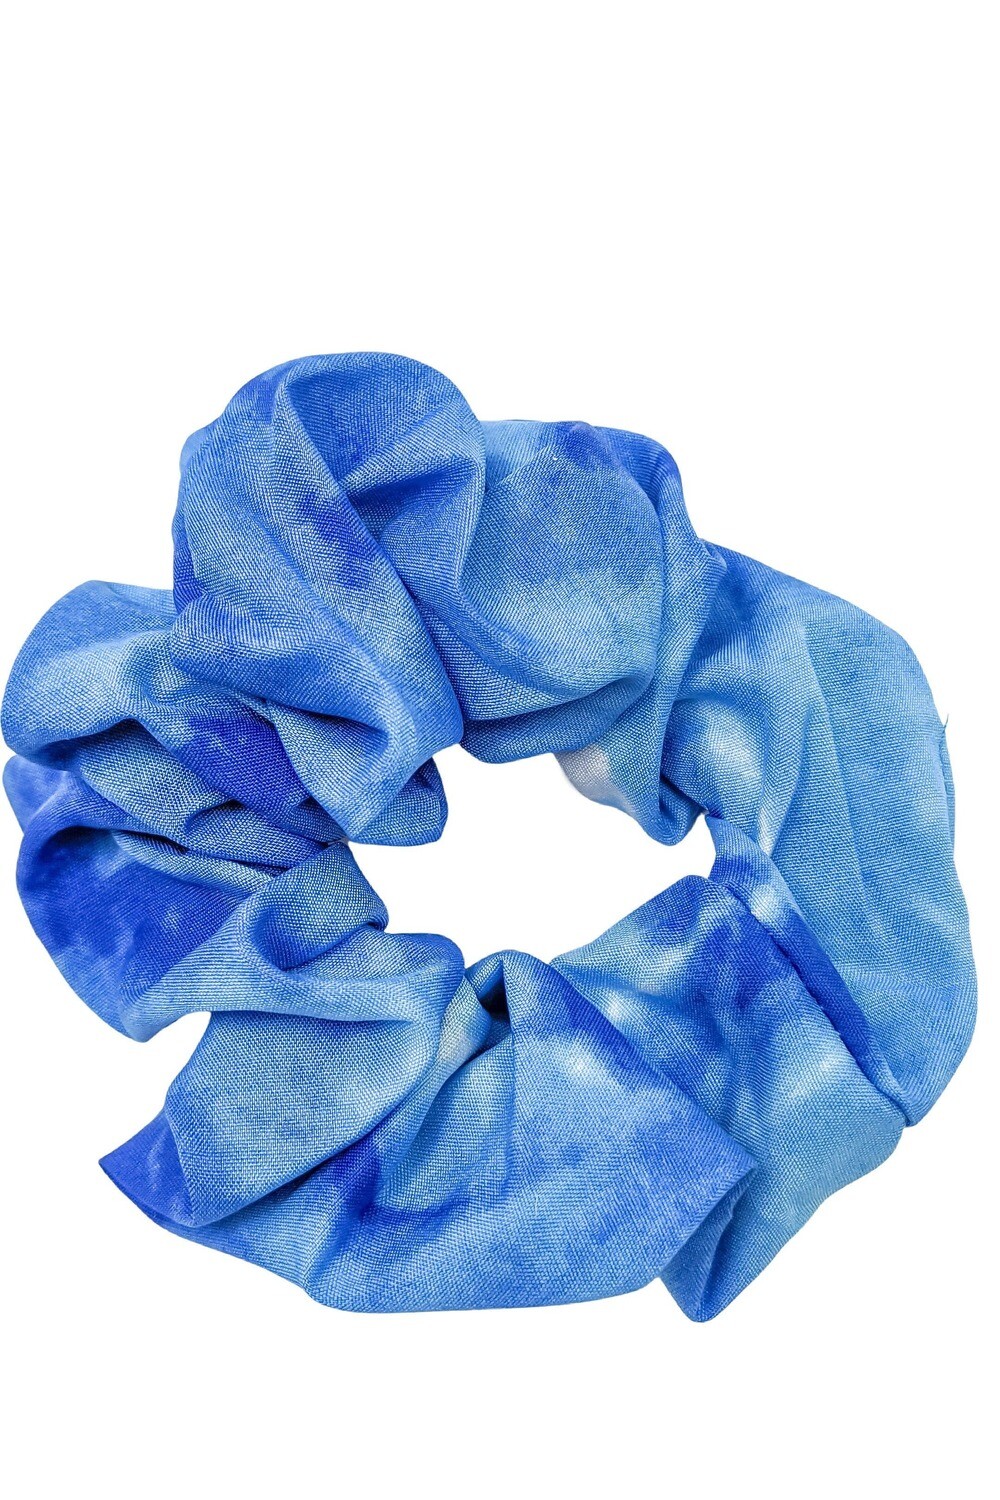 Blue Tie Dye Scrunchie